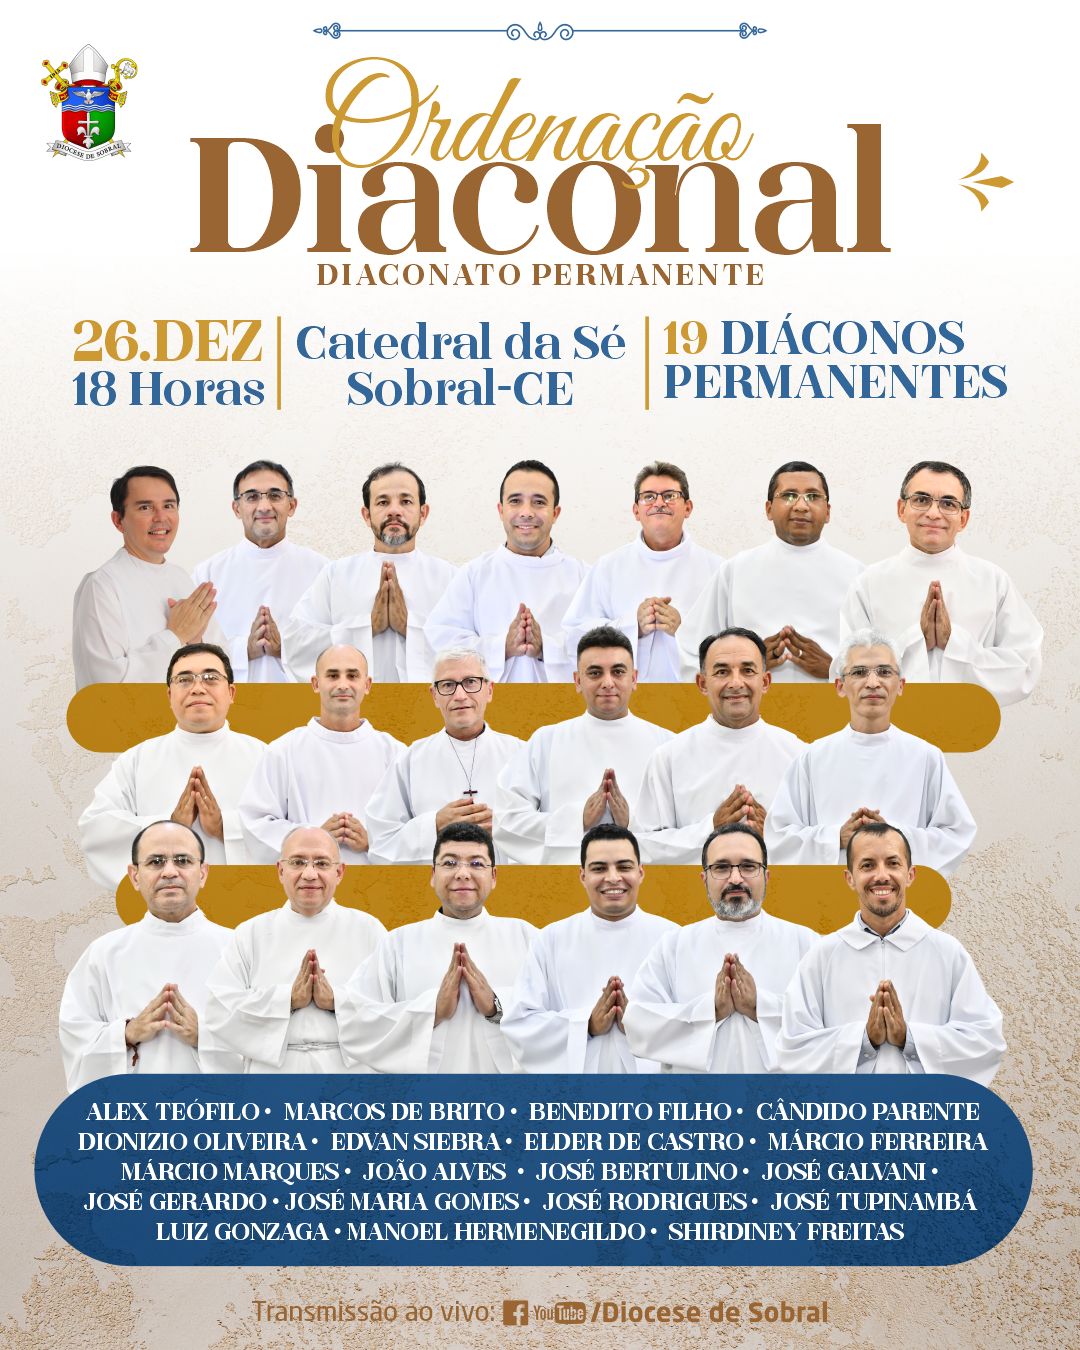 Ordenação Diaconal na Diocese de Sobral. Créditos: Diocese de Sobral